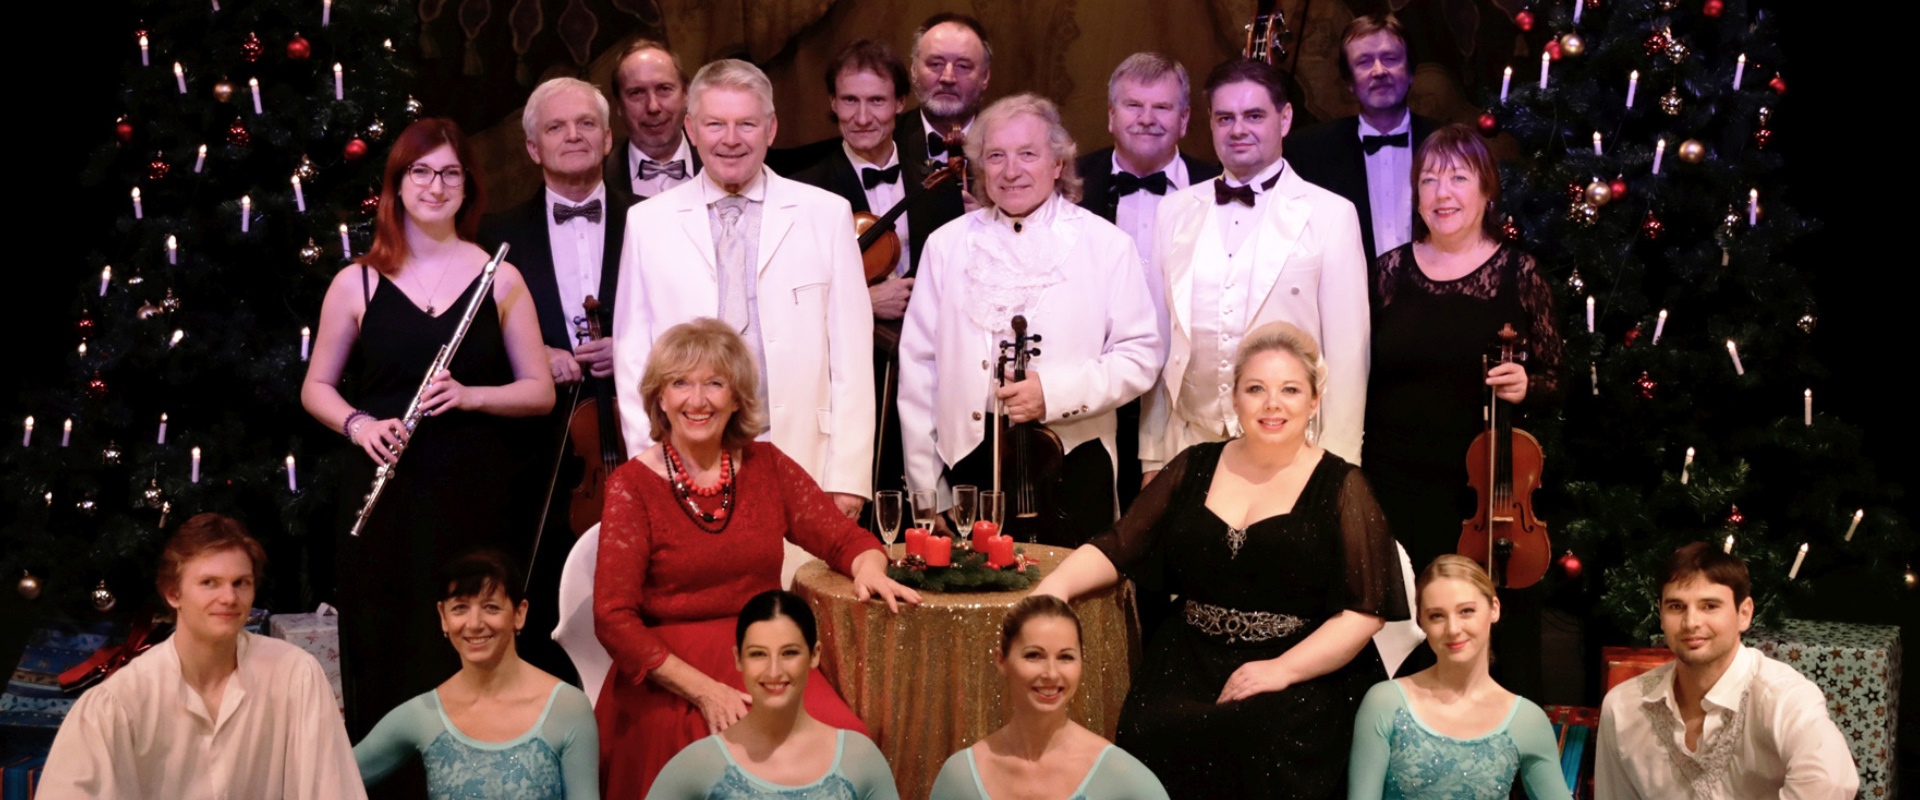 Das Ensemble der Wiener Operetten Weihnacht mit 20 Personen in festlicher Kleidung.